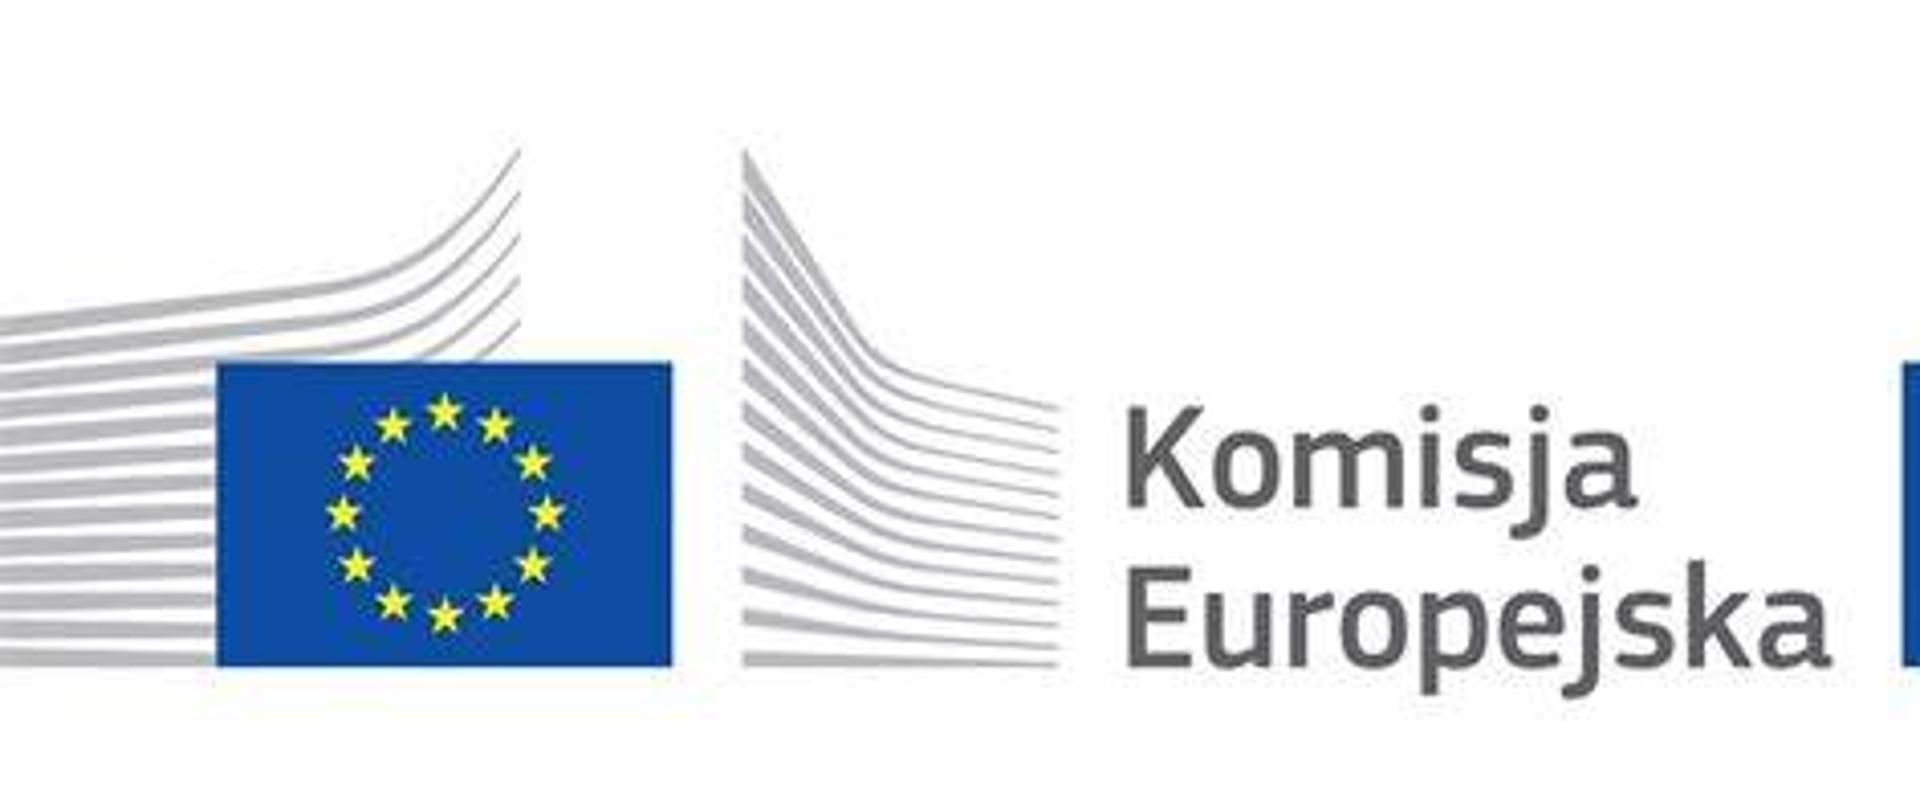 Logotyp Komisji Europejskiej przedstawia flagę Unii Europejskiej i napis Komisja Europejska